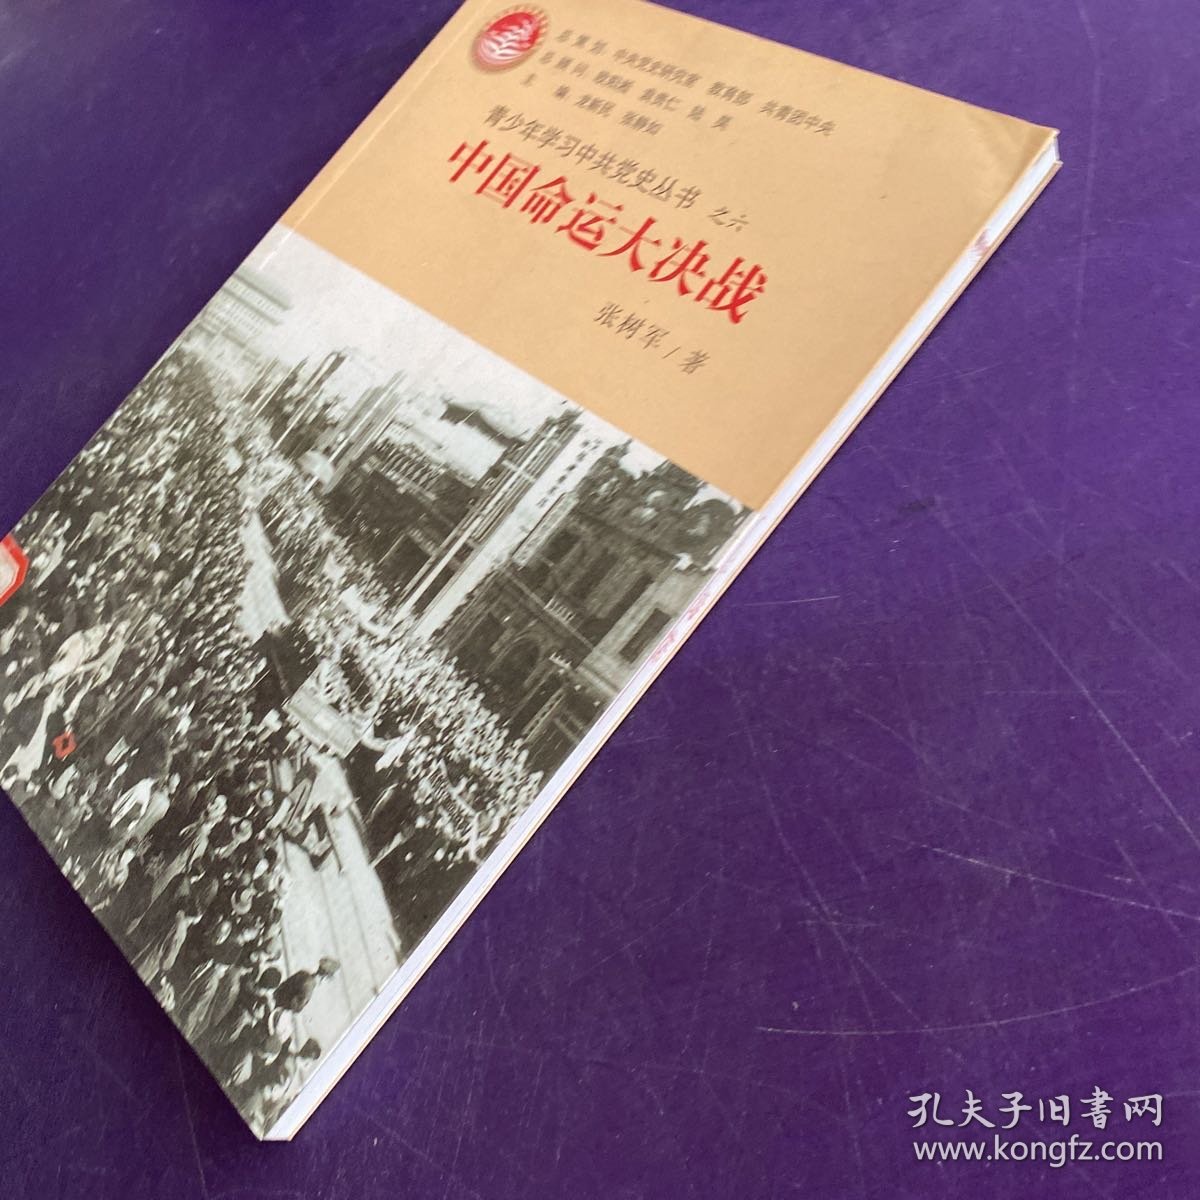 青少年学习中共党史丛书之6：中国命运大决战